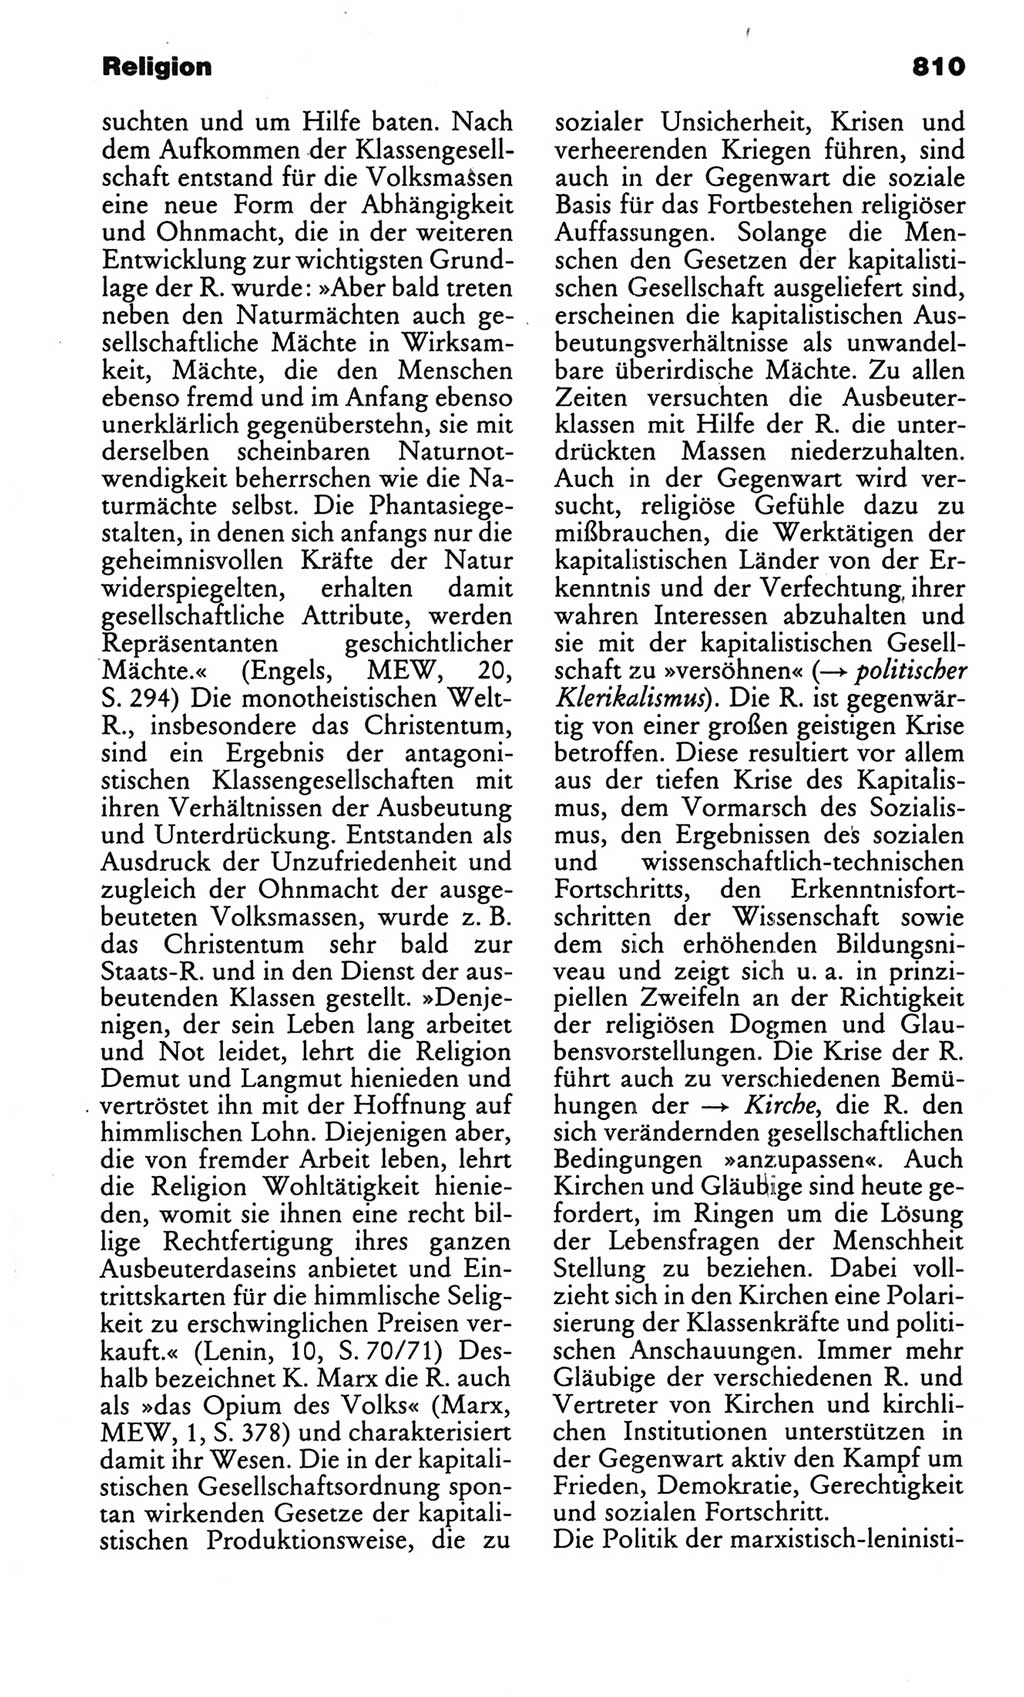 Kleines politisches Wörterbuch [Deutsche Demokratische Republik (DDR)] 1986, Seite 810 (Kl. pol. Wb. DDR 1986, S. 810)